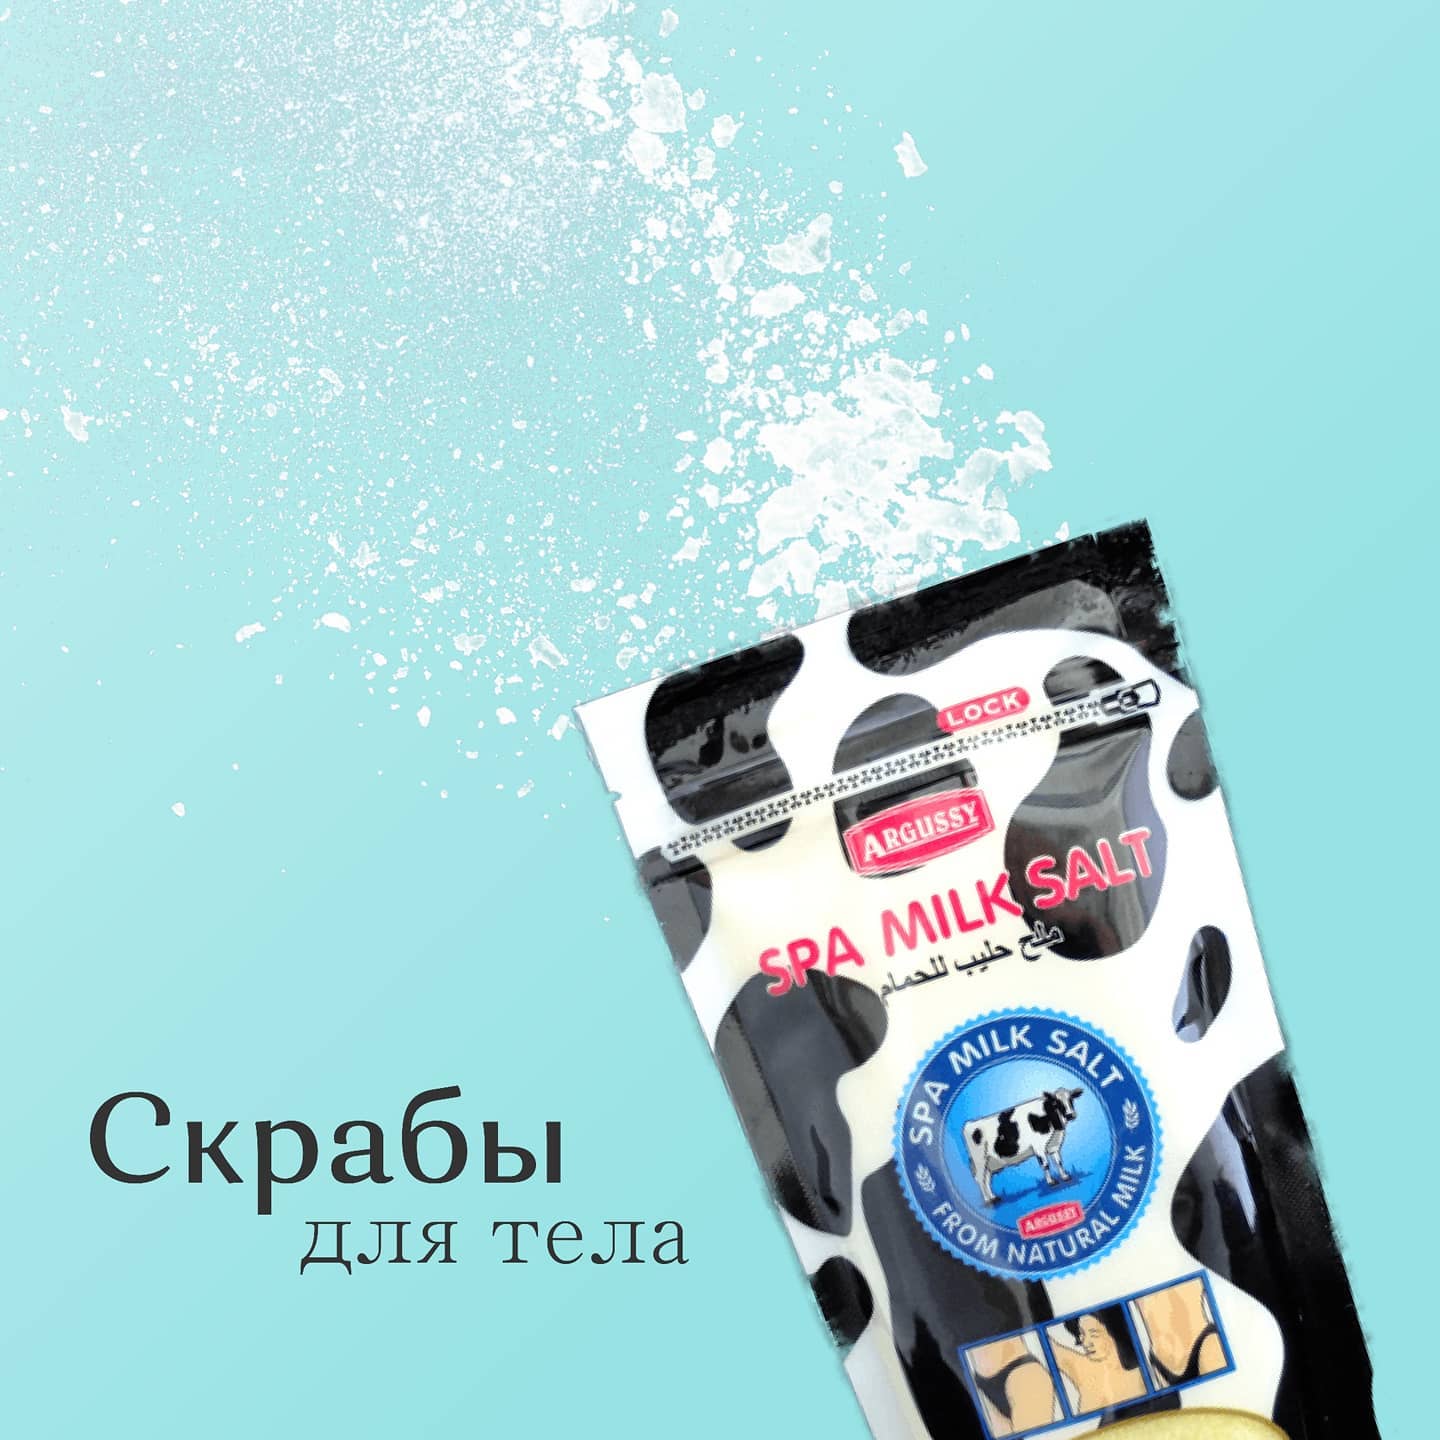 Натуральный солевой спа скраб для тела Молочный YOKO Argussy Spa Milk Salt 300 гр. Таиланд